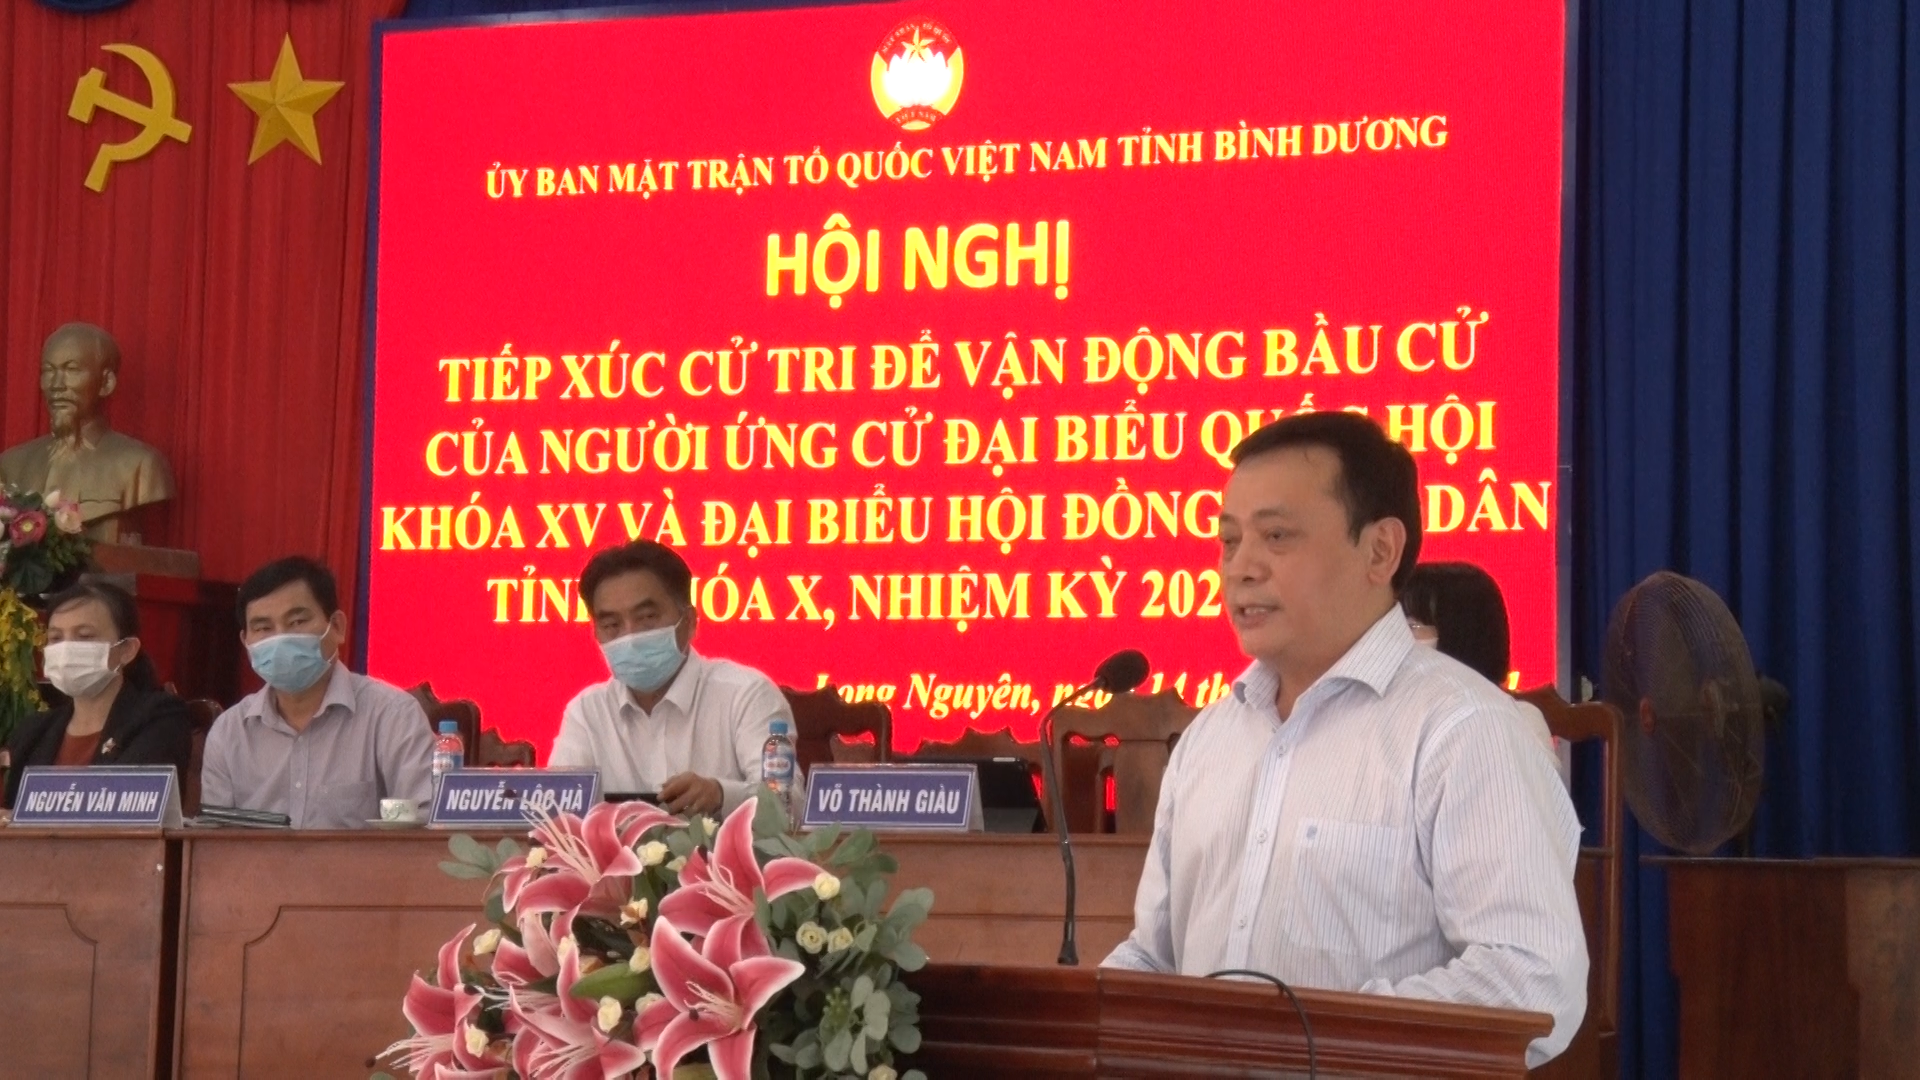 Ông Lê Văn Khảm - Ứng viên bầu cử Đại biểu Quốc hội khóa XV đọc chương trình hành động.